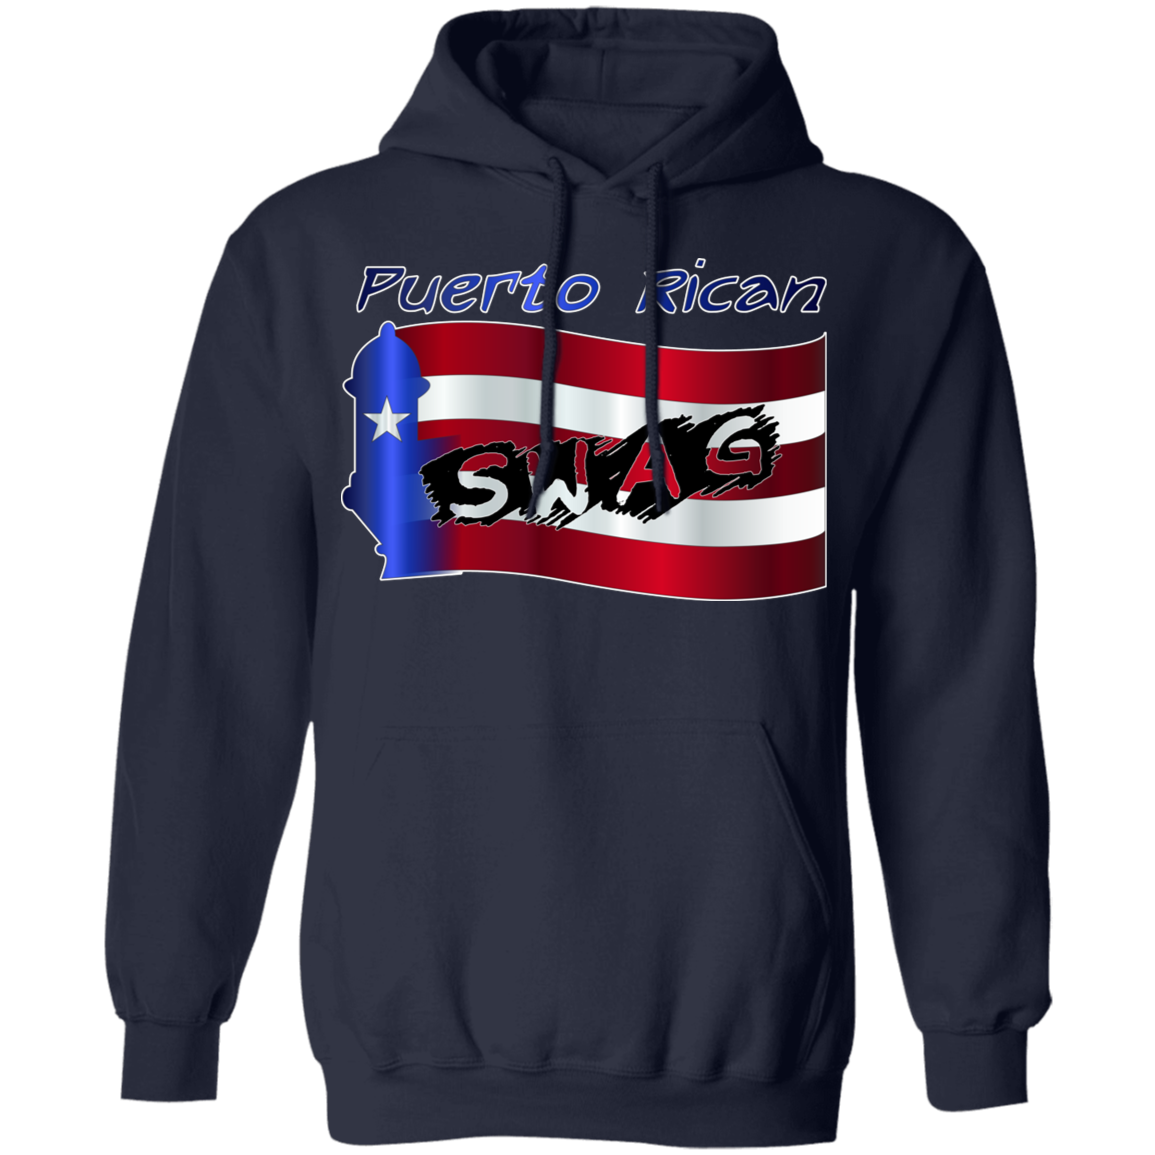 PR SWAG Pullover Hoodie - Puerto Rican Pride